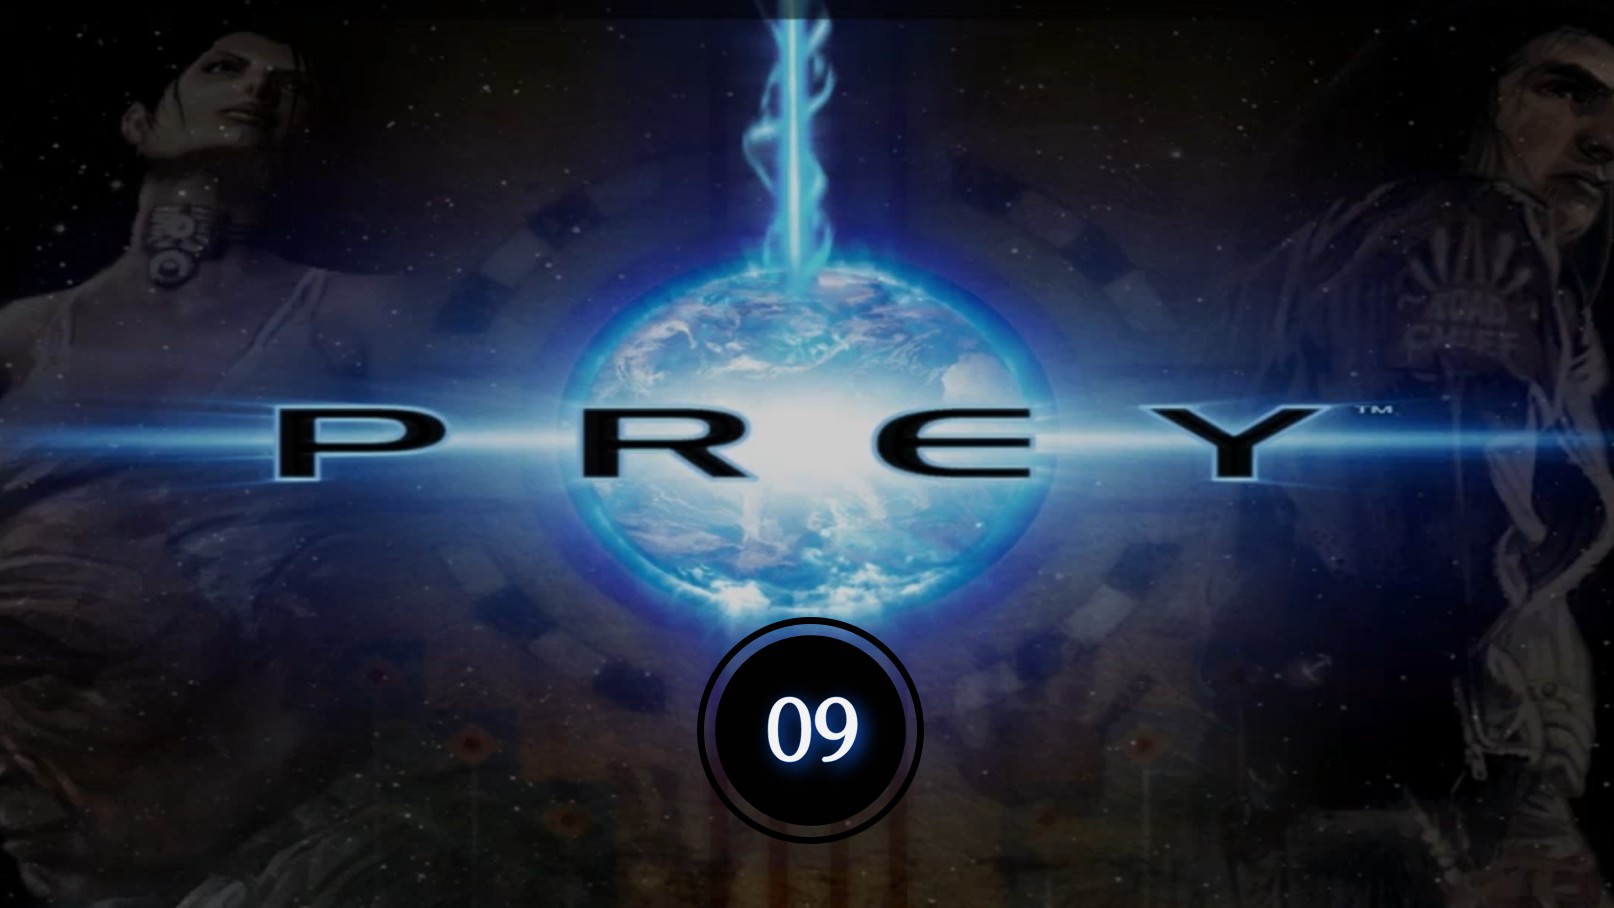 Prey (2006) 09